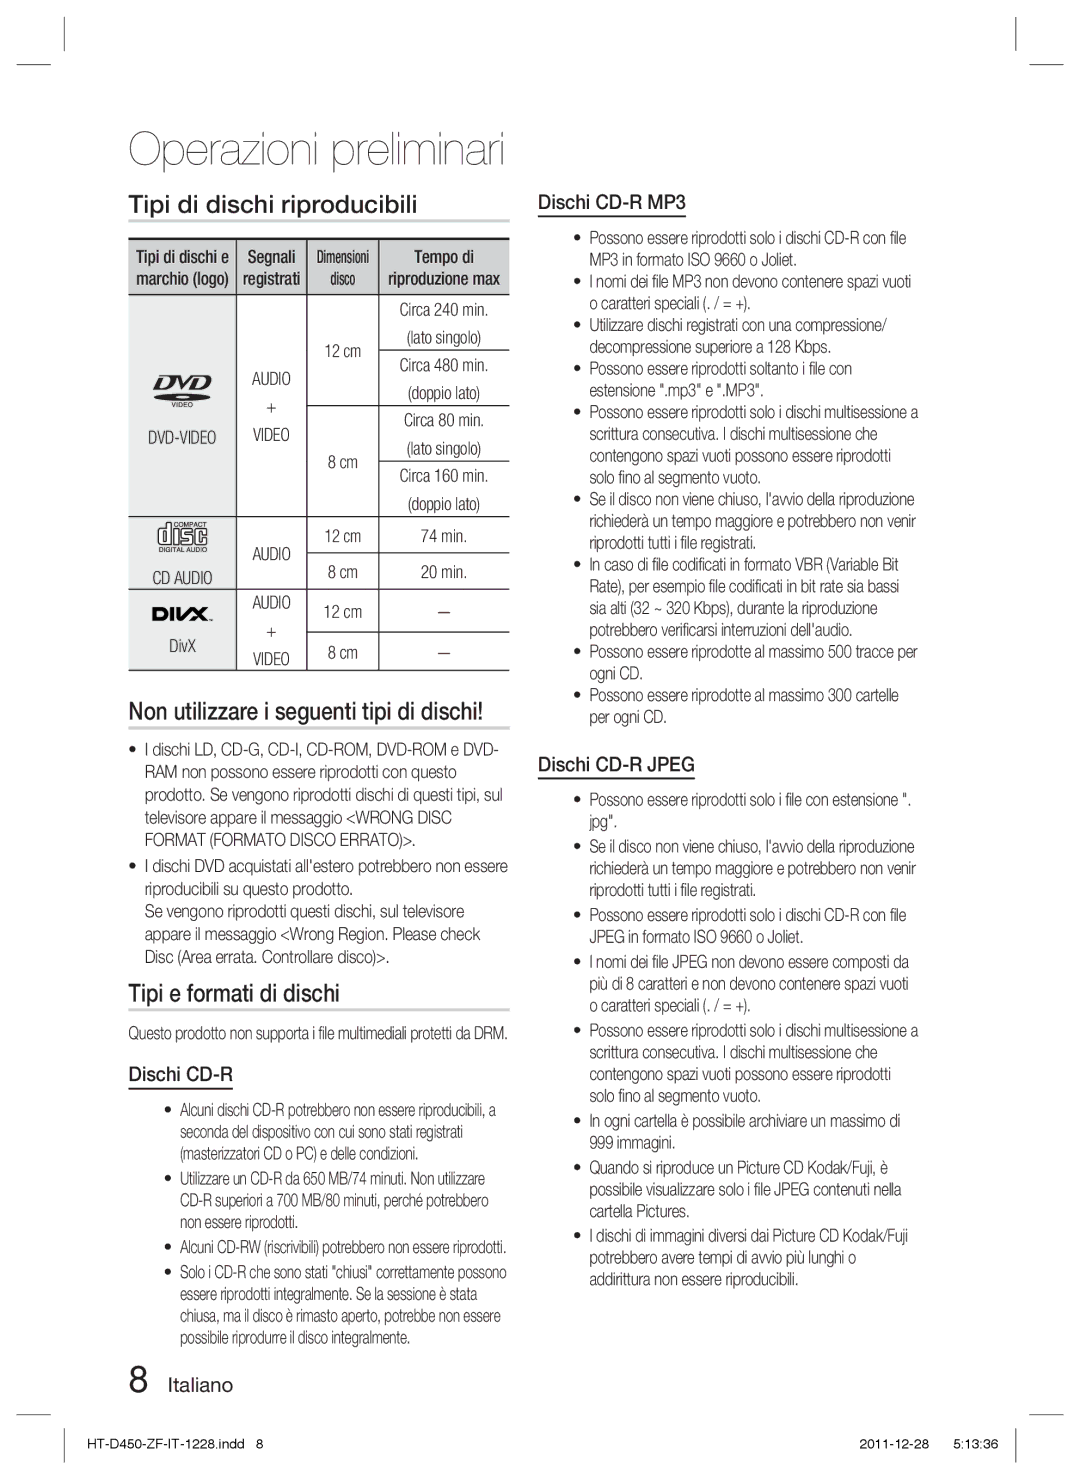 Samsung HT-D455/ZF manual Tipi di dischi riproducibili, Non utilizzare i seguenti tipi di dischi, Tipi e formati di dischi 